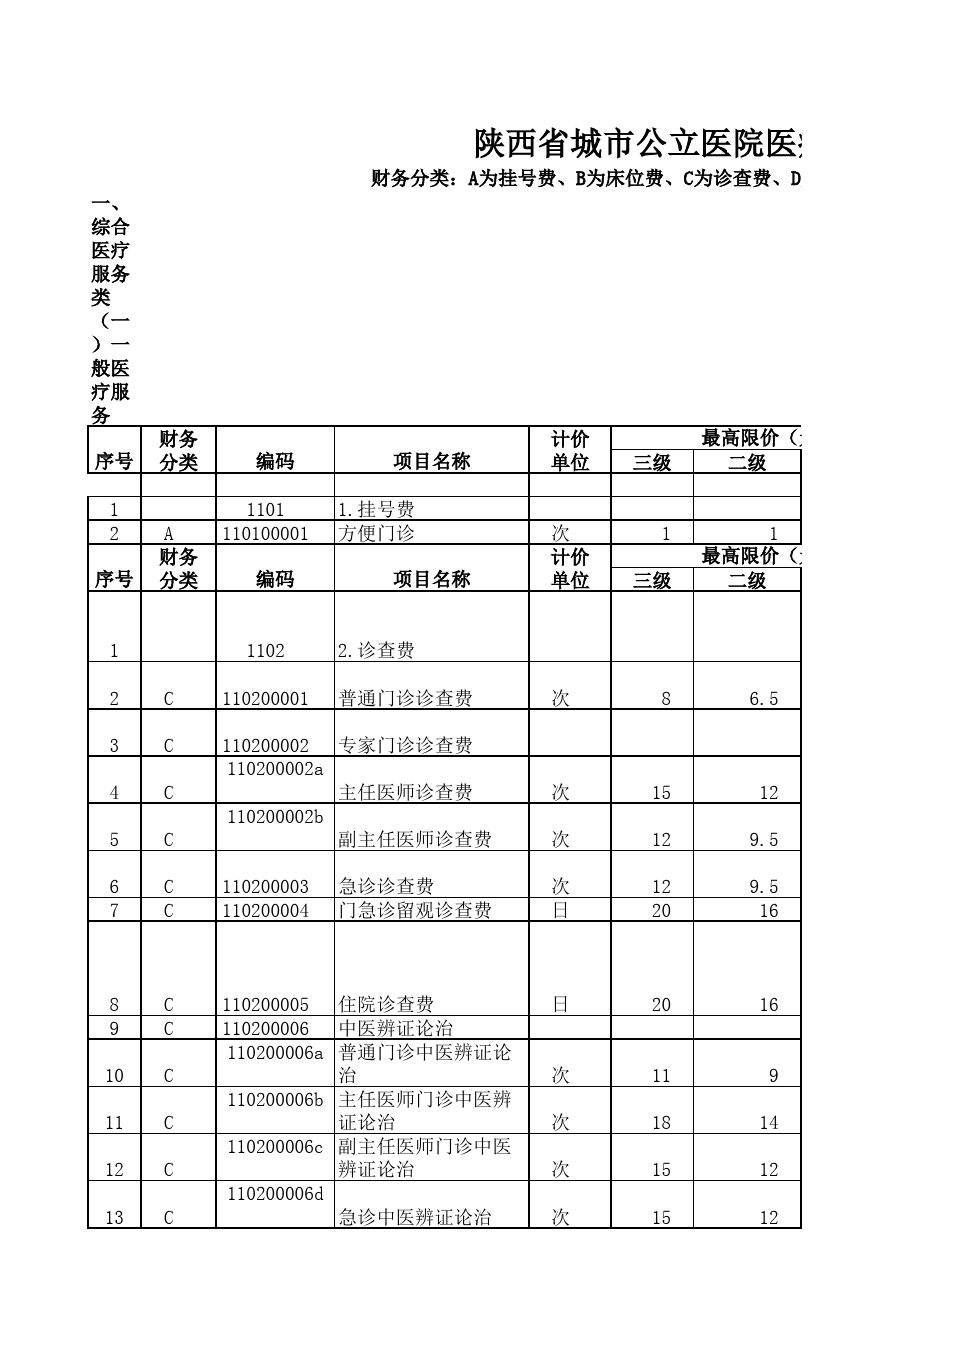 陕西省城市公立医院医疗服务项目价格(2017版)